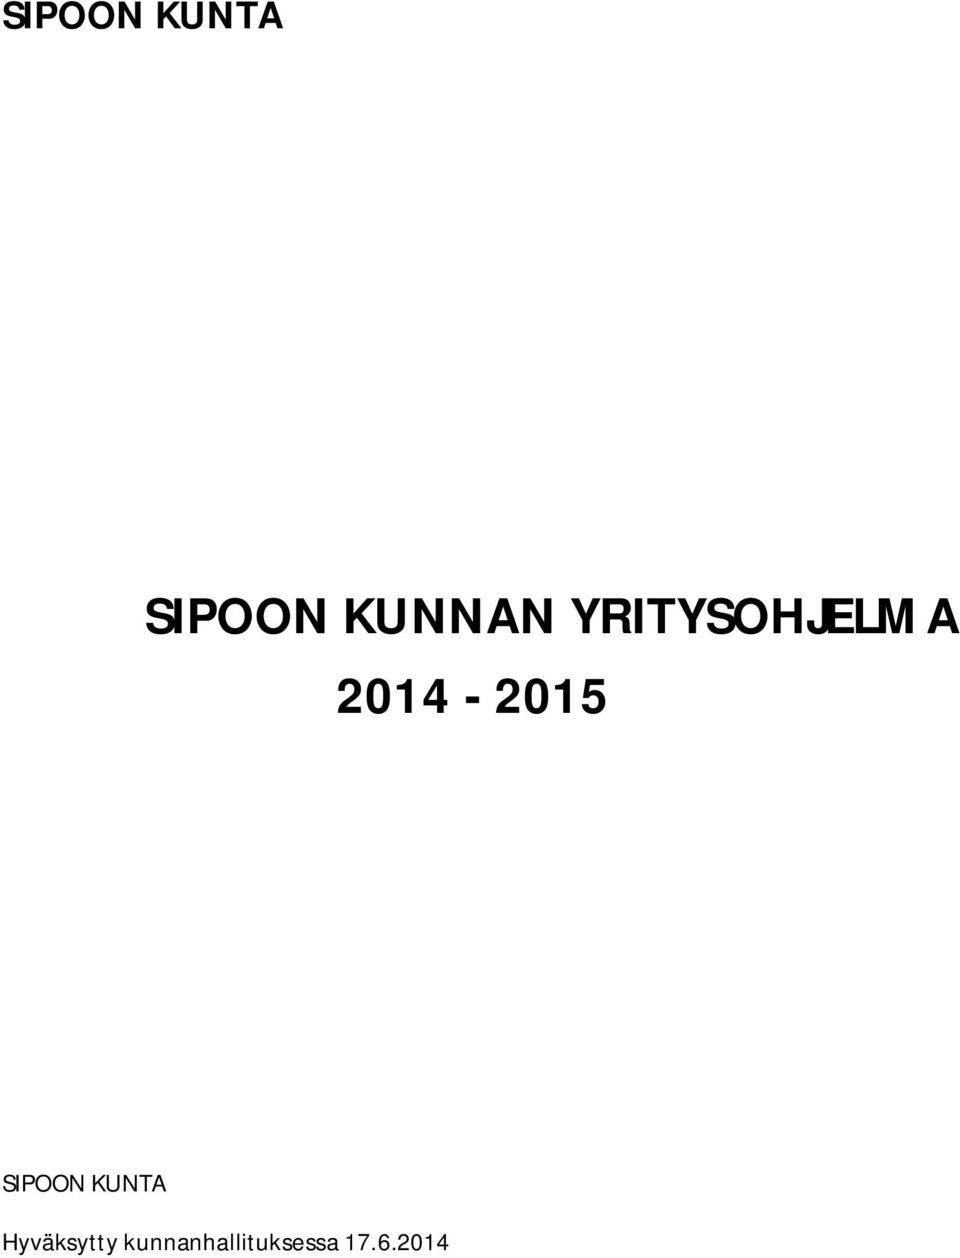 2014-2015 SIPOON KUNTA